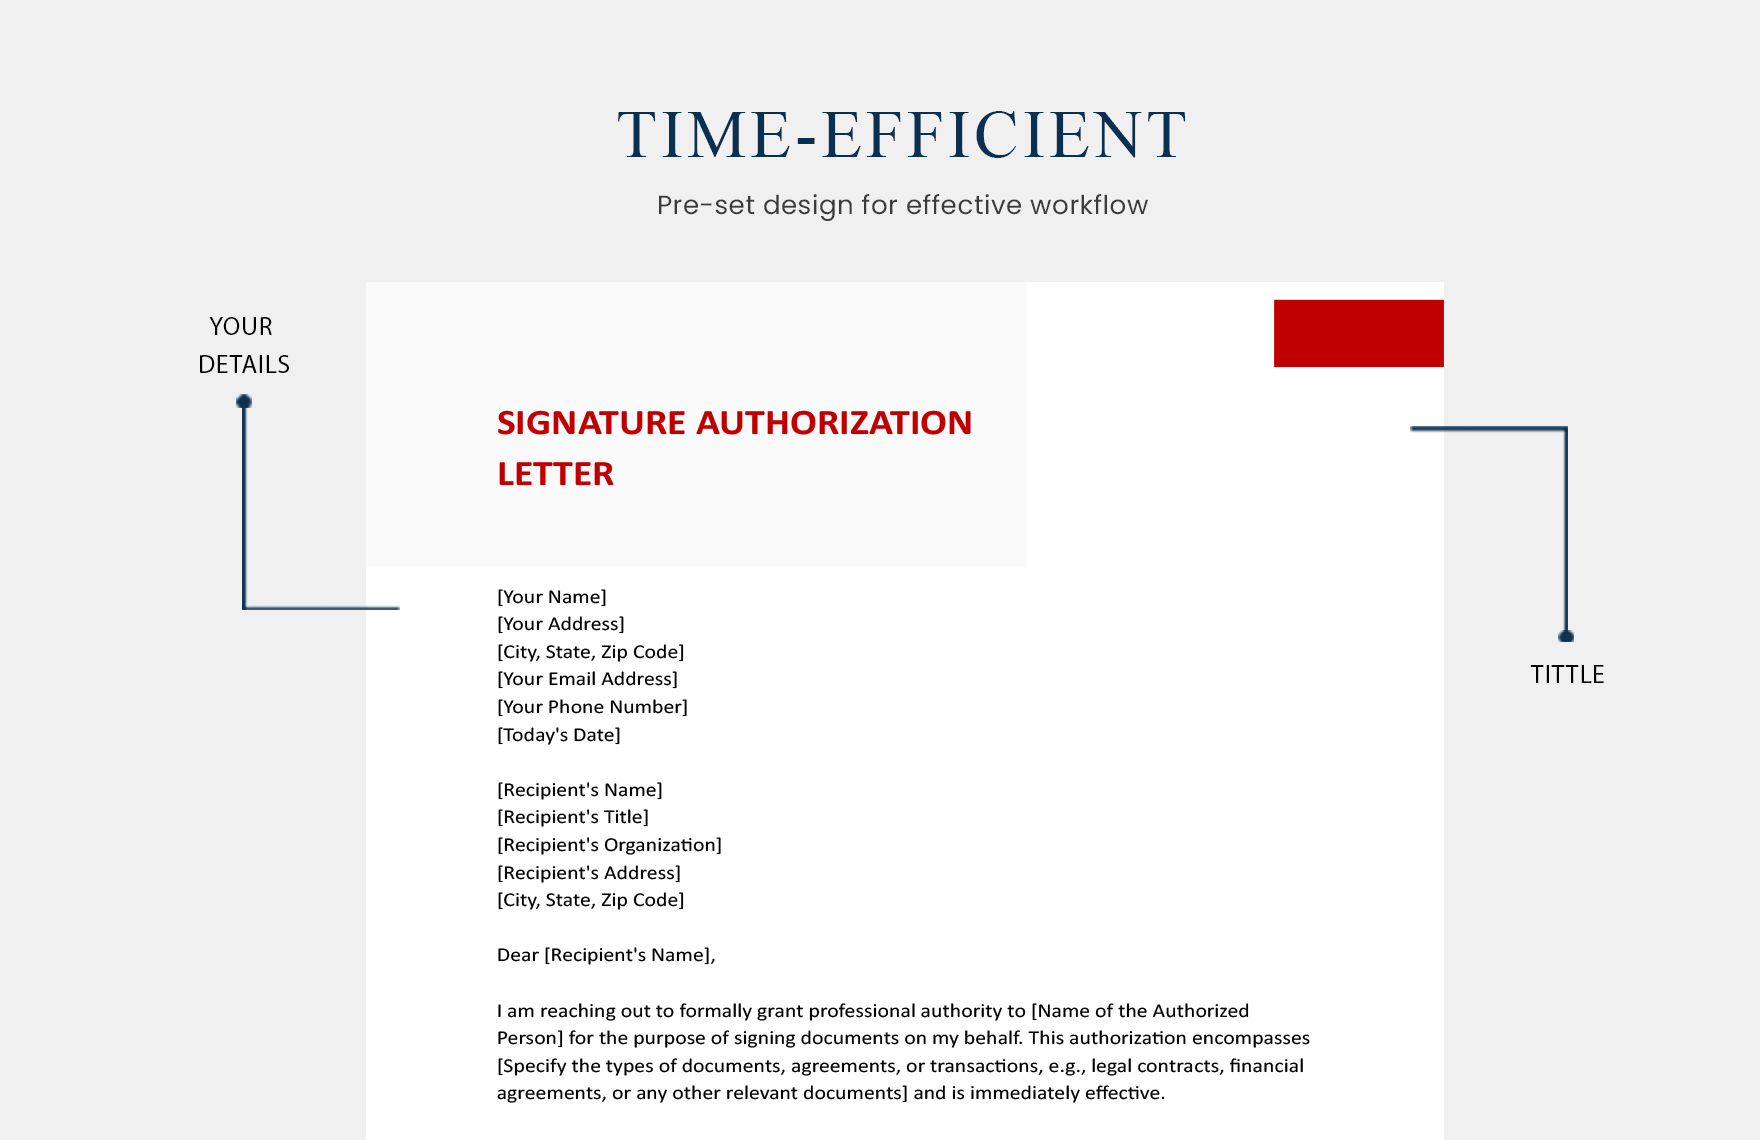 Signature Authorization Letter